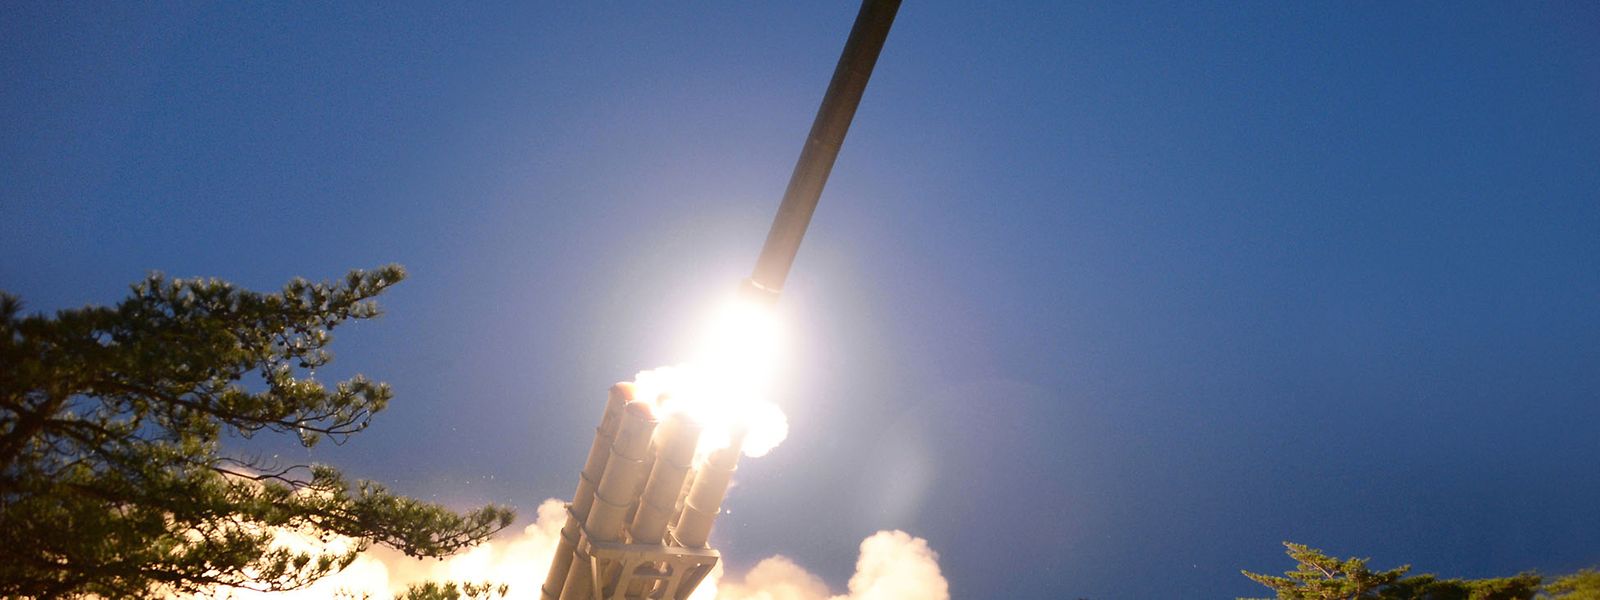 Dieses von der staatlichen nordkoreanischen Nachrichtenagentur KCNA am 30.03.2020 zur Verfügung gestellte Foto zeigt einen Raketentest. Nordkorea hat bei seinem Raketentest nach Darstellung des Militärs einen "supergroßen Mehrfach-Raketenwerfer" eingesetzt.